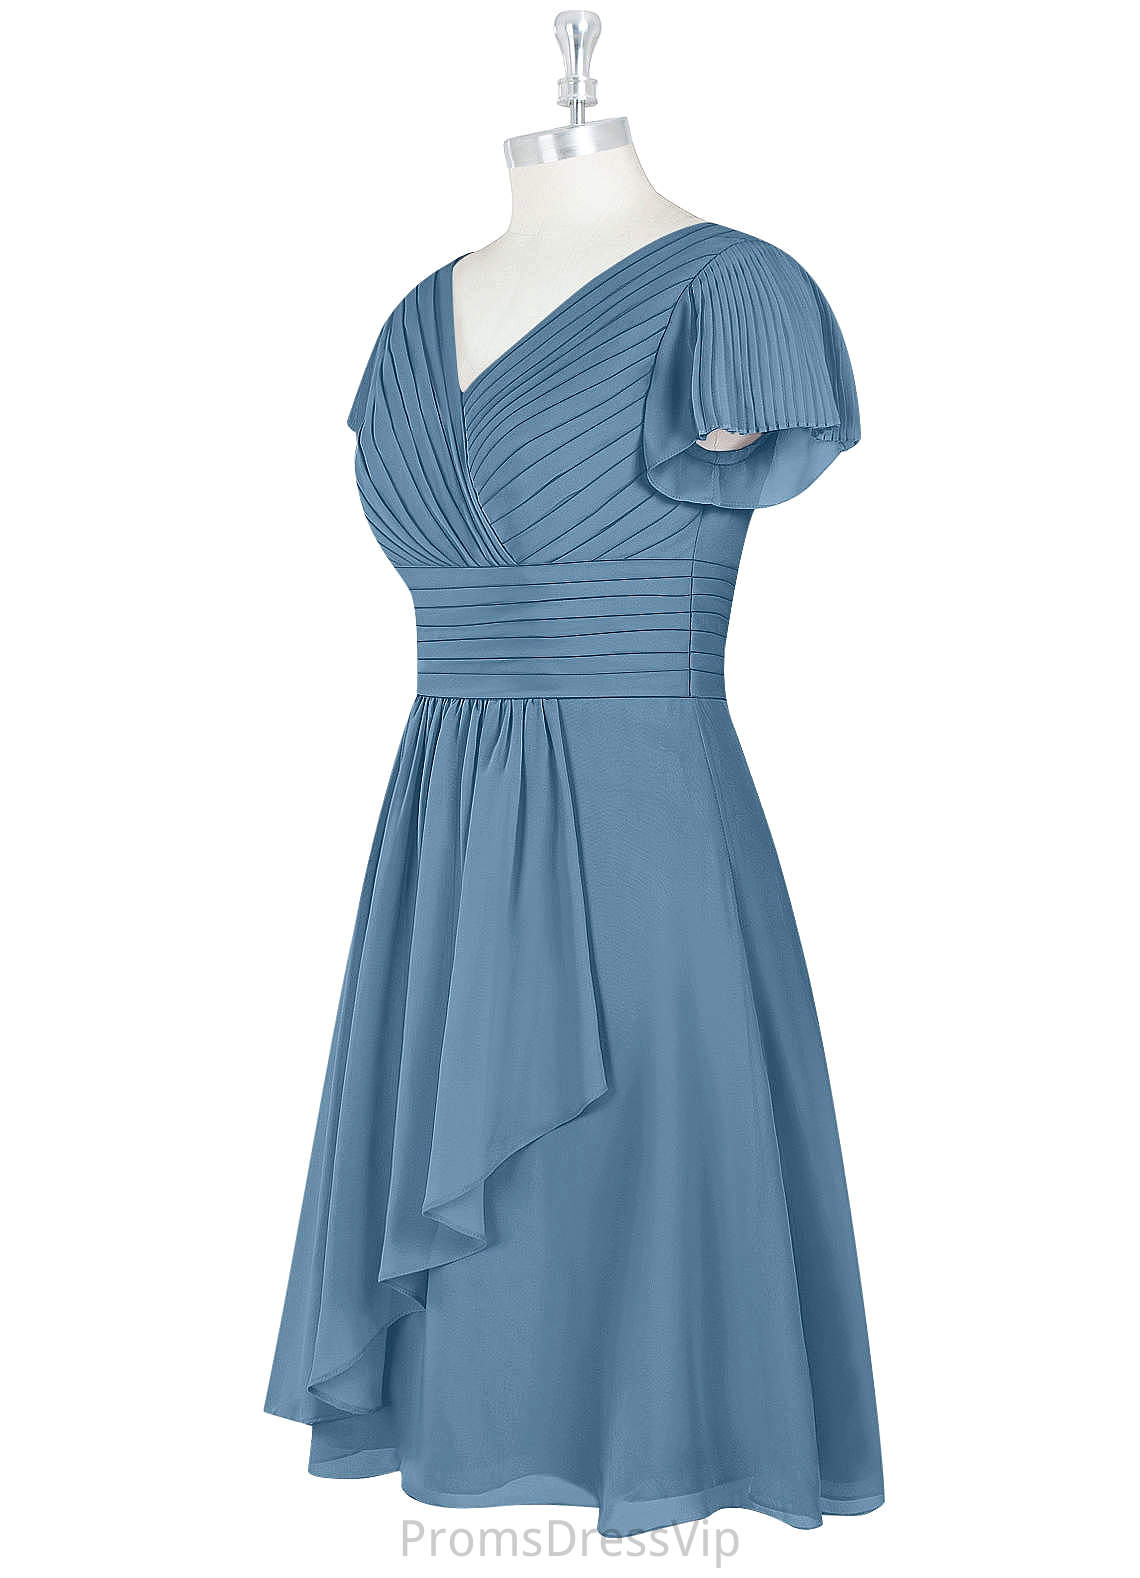 Uerica Floor Length V-Neck Sleeveless Empire Waist A-Line/Princess Bridesmaid Dresses